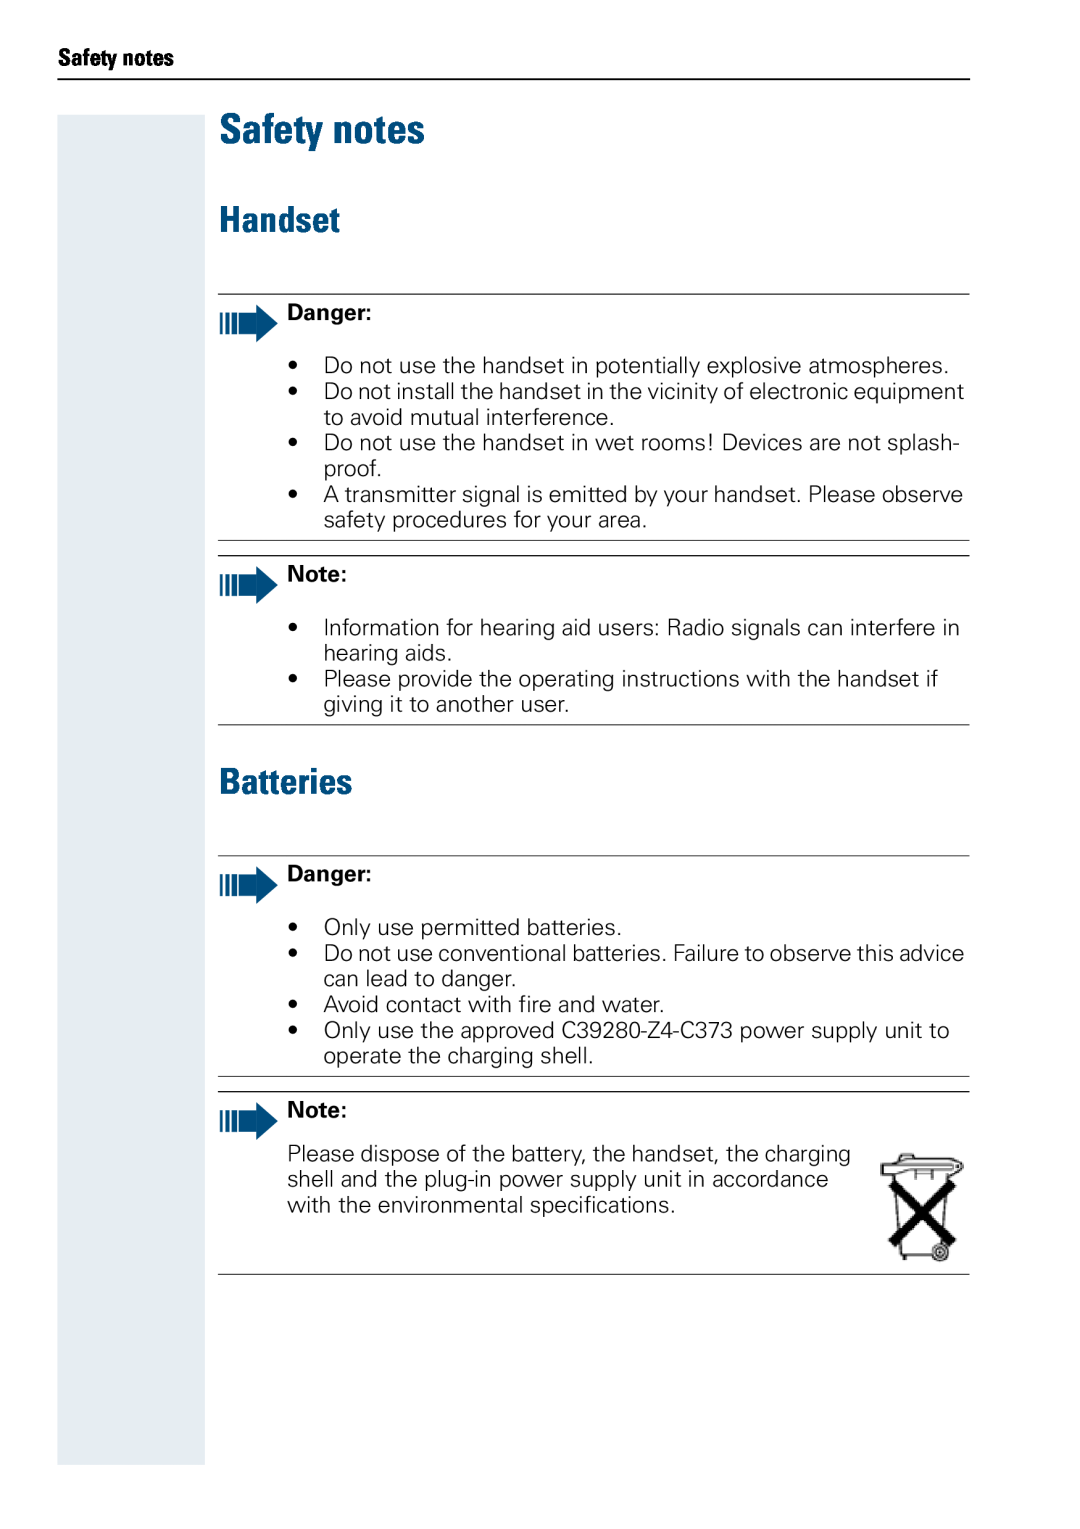 Siemens 3000 V3.0 manual Safety notes, Handset, Batteries, Danger 